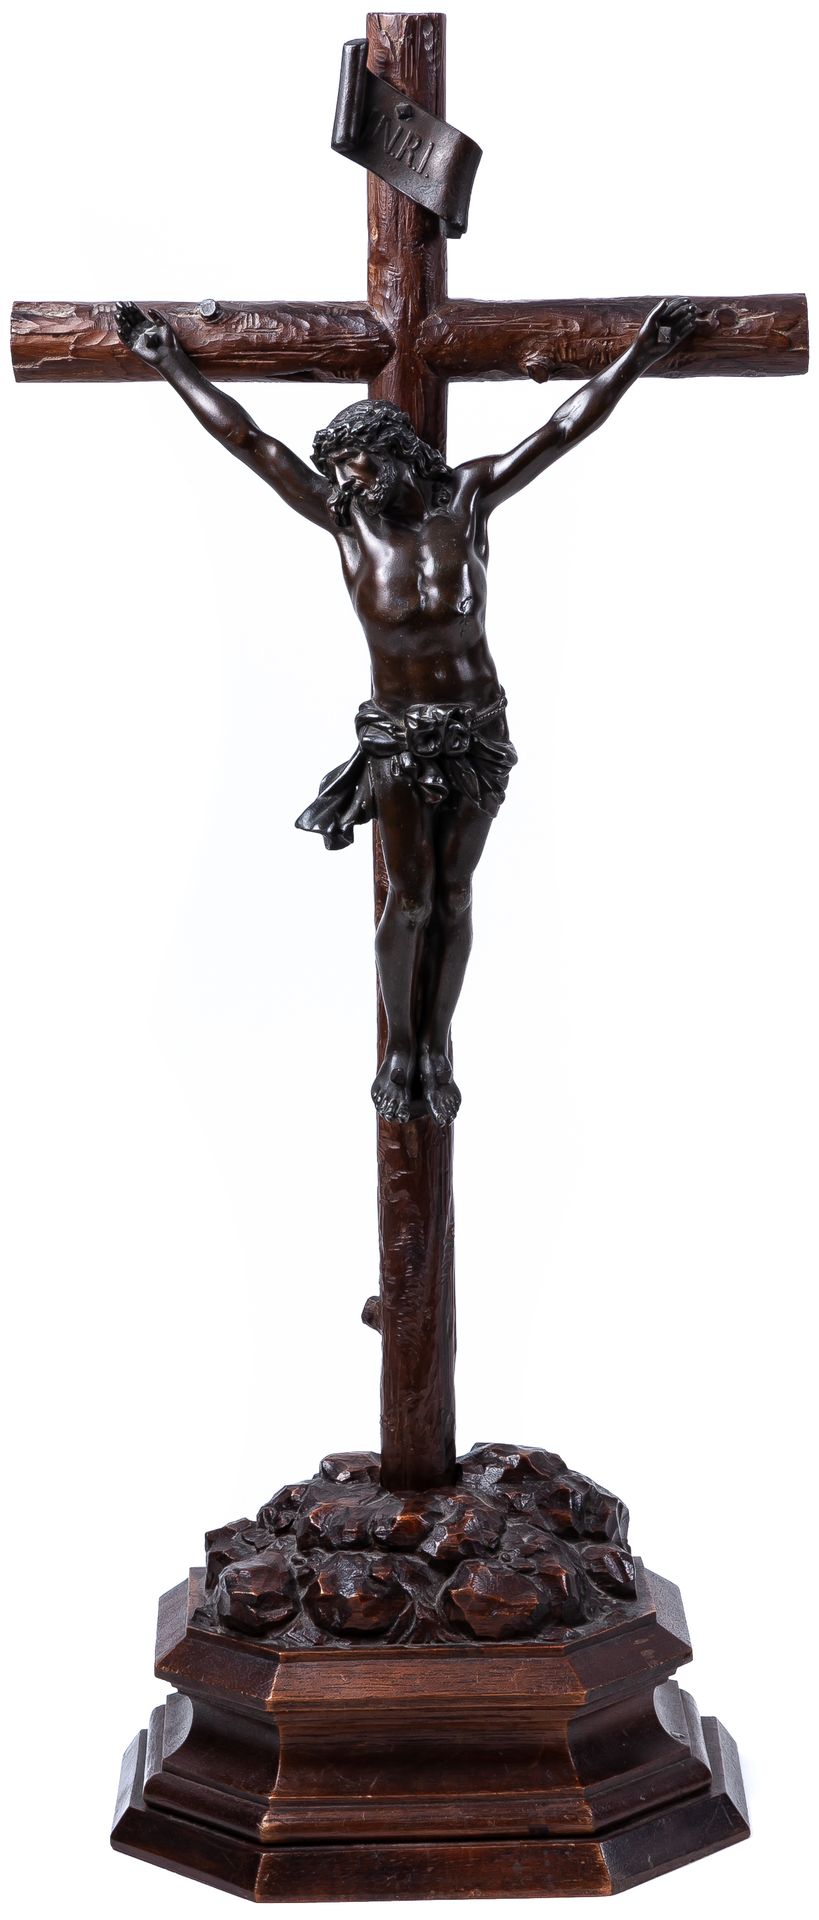 Null 意大利19世纪末的青铜和木雕基督像

60 x 26厘米

250 - 300 €